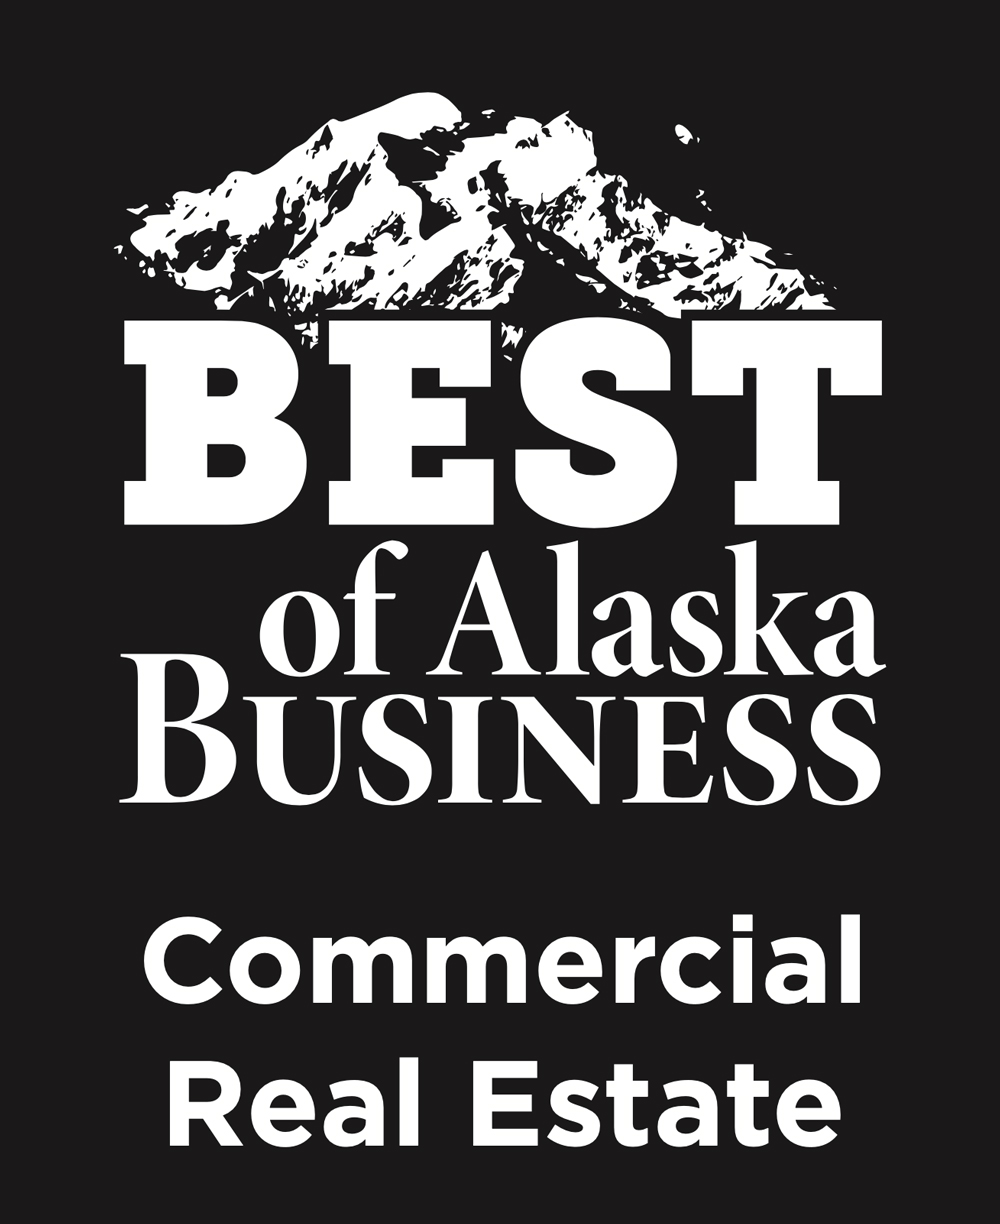 Best of Alaska Business Commercial Real Estate logo